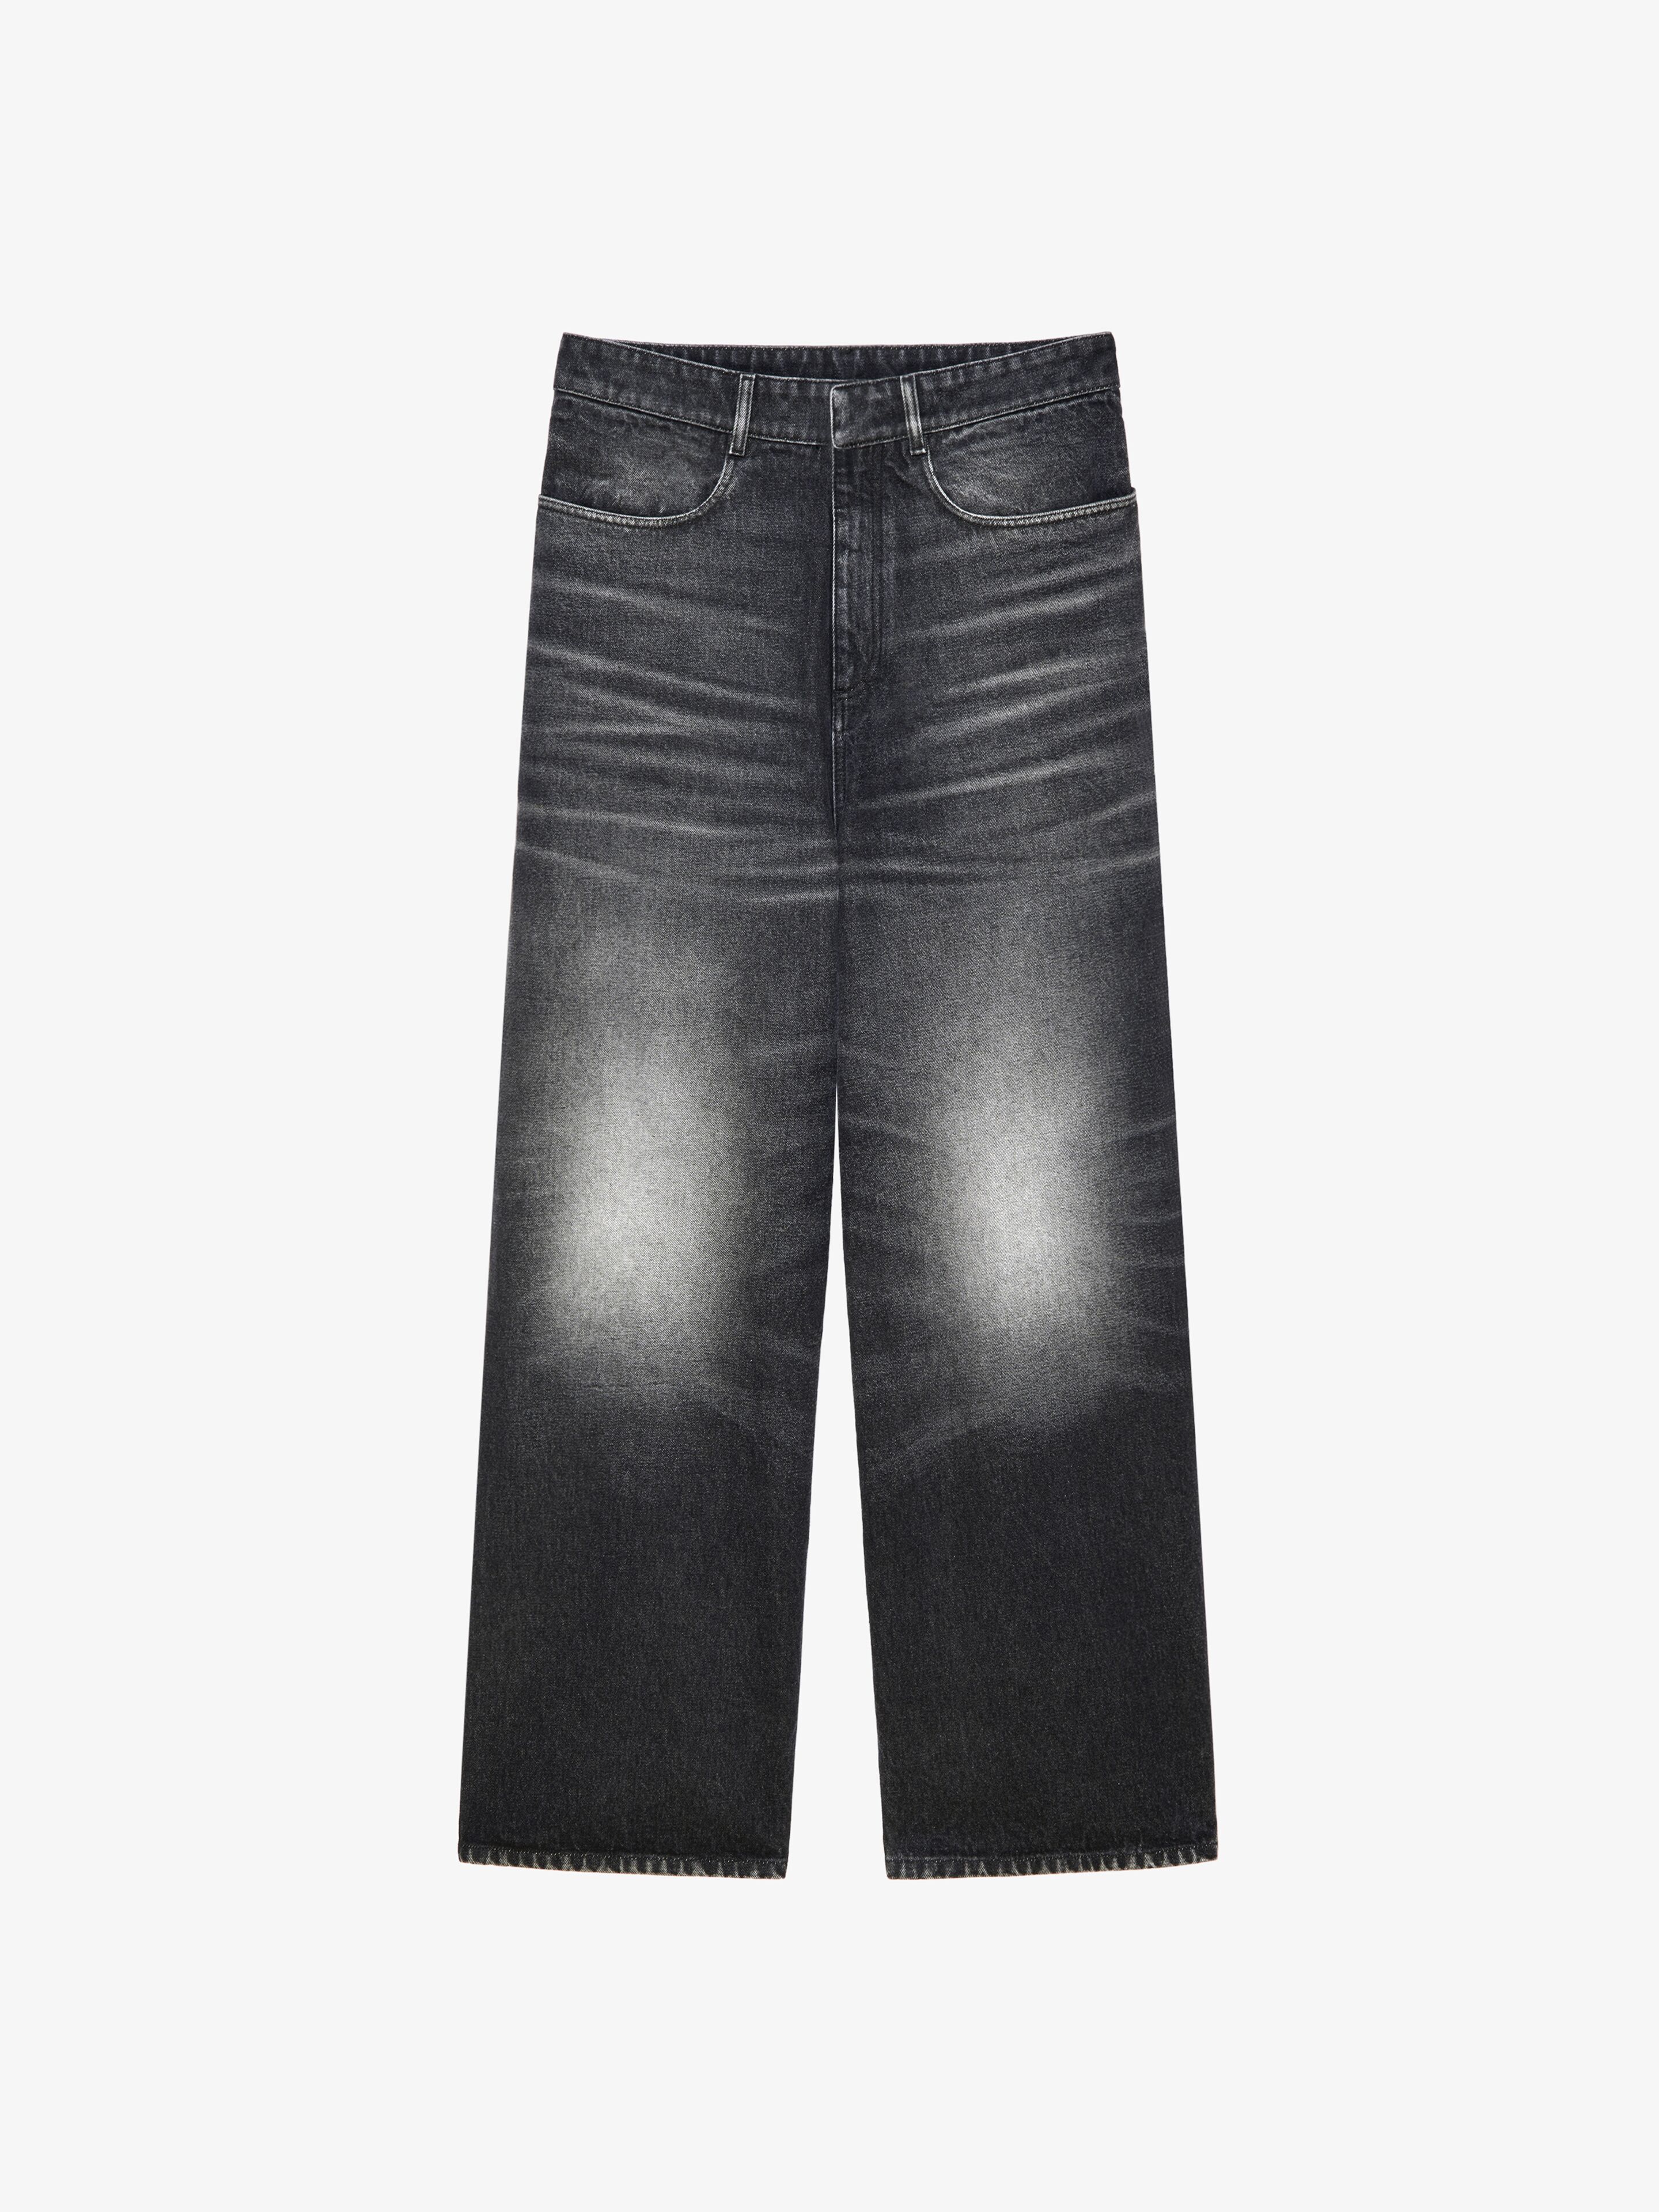 注目のブランド 新作【GIVENCHY】Oversized jeans in washed-out denim デニム・ジーパン サイズを選択